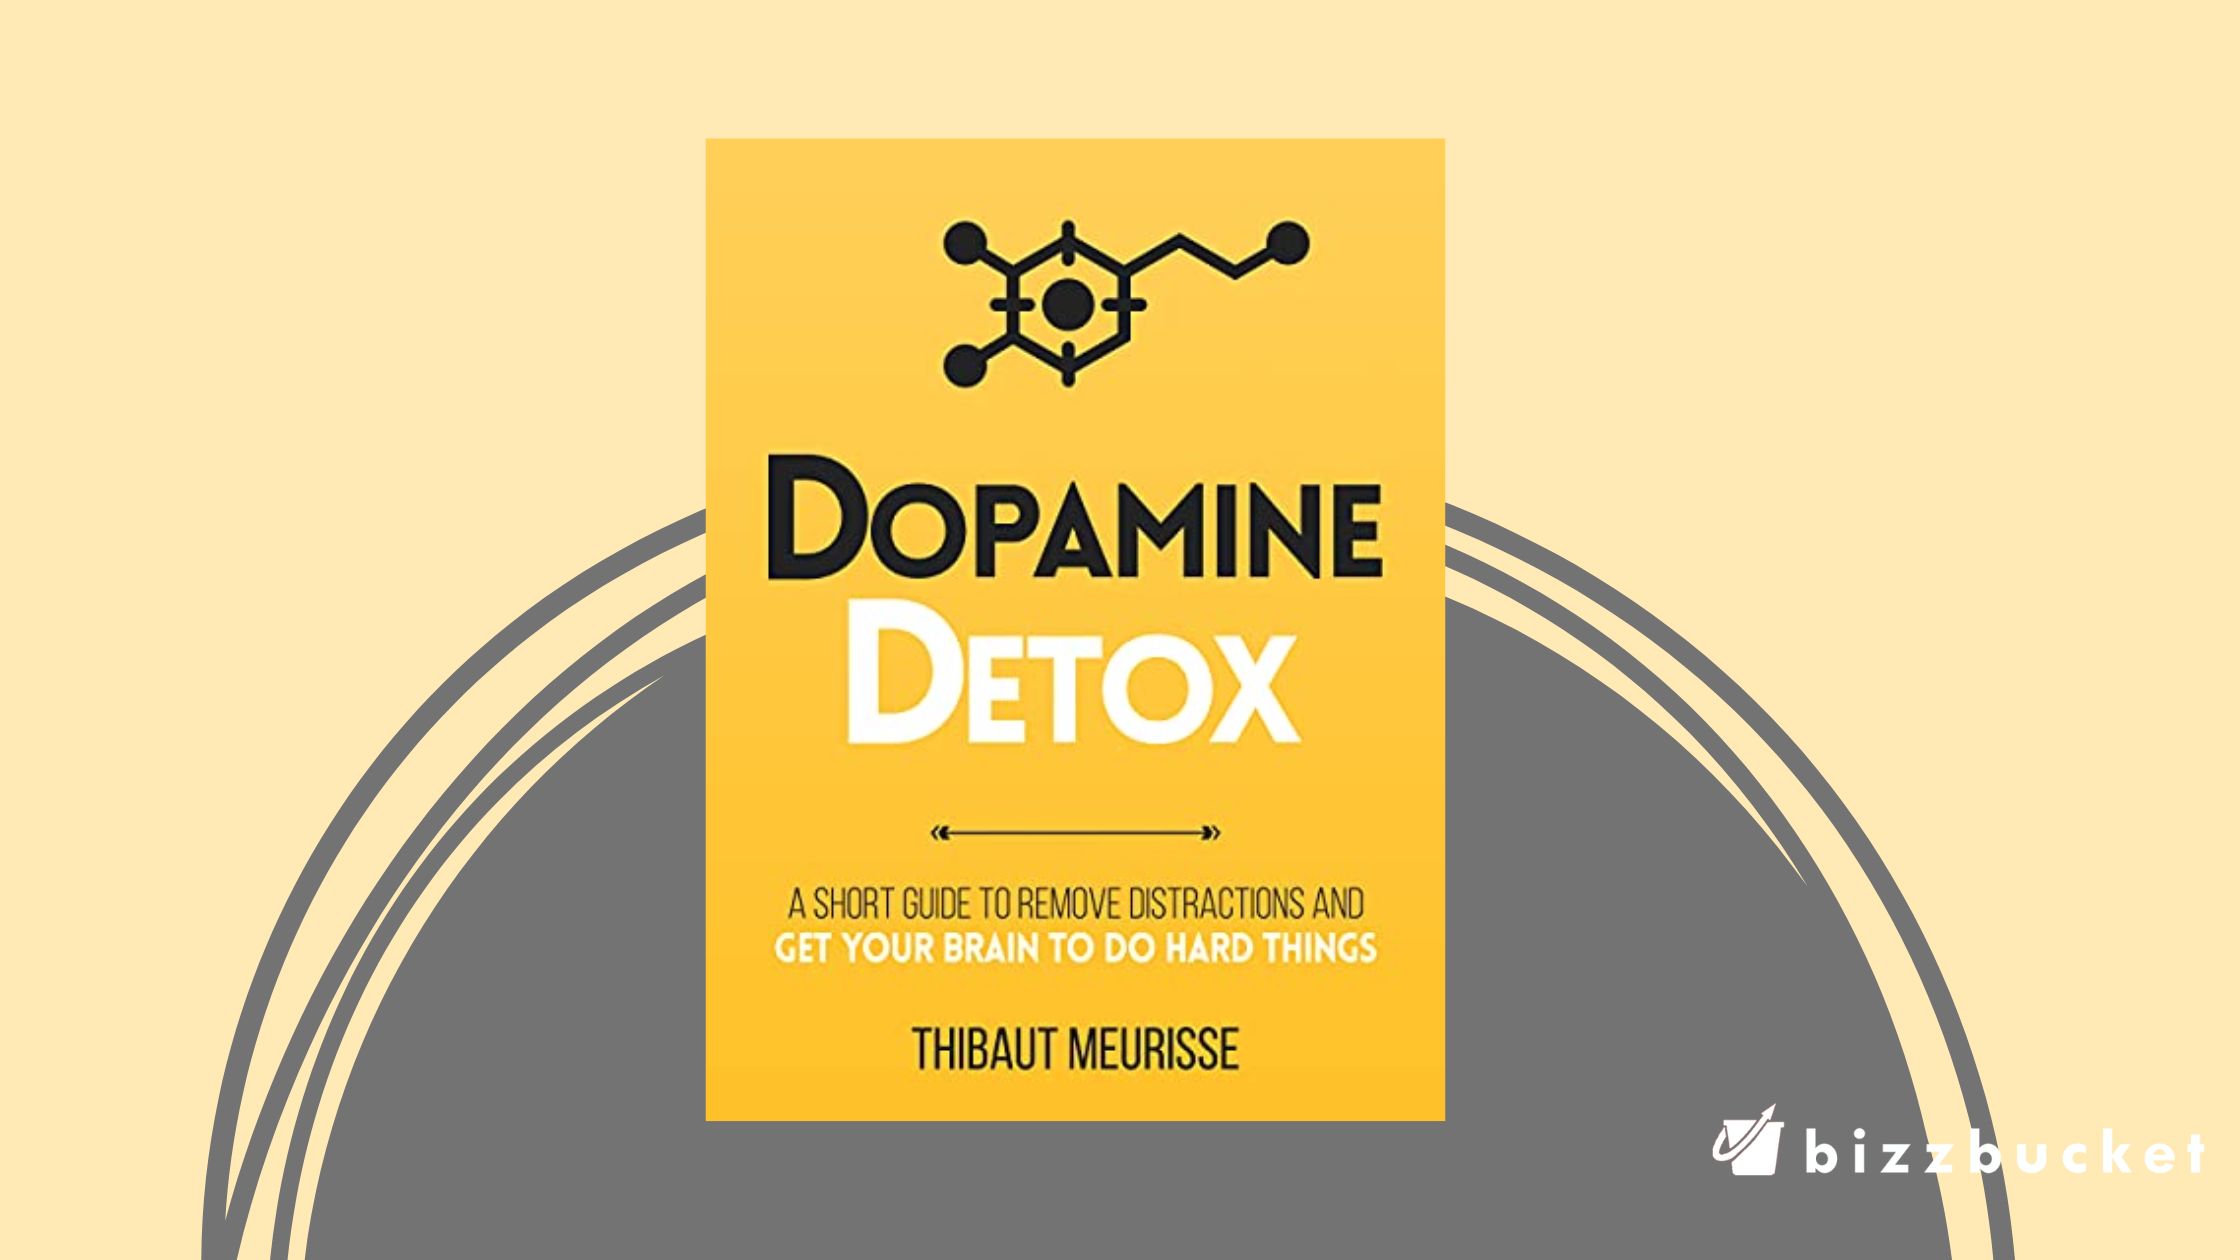 Dopamine Detox summary